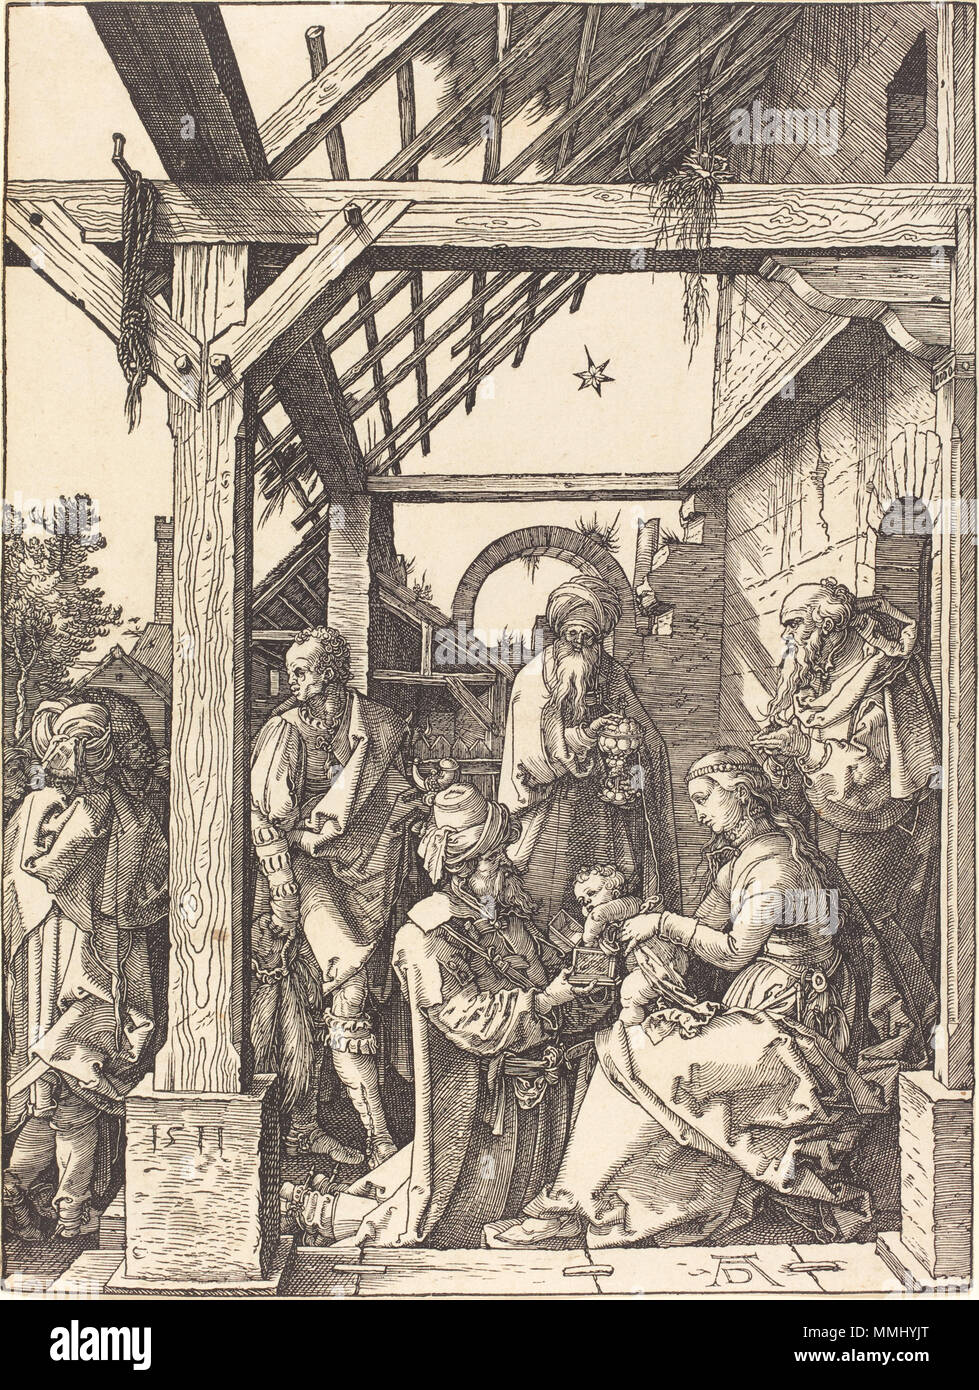 R-20101201-0039.jpg Albrecht Dürer (German, 1471 - 1528 ), The Adoration of the Magi, 1511, woodcut, Rosenwald Collection Albrecht Dürer - The Adoration of the Magi (NGA 1943.3.3672) Stock Photo